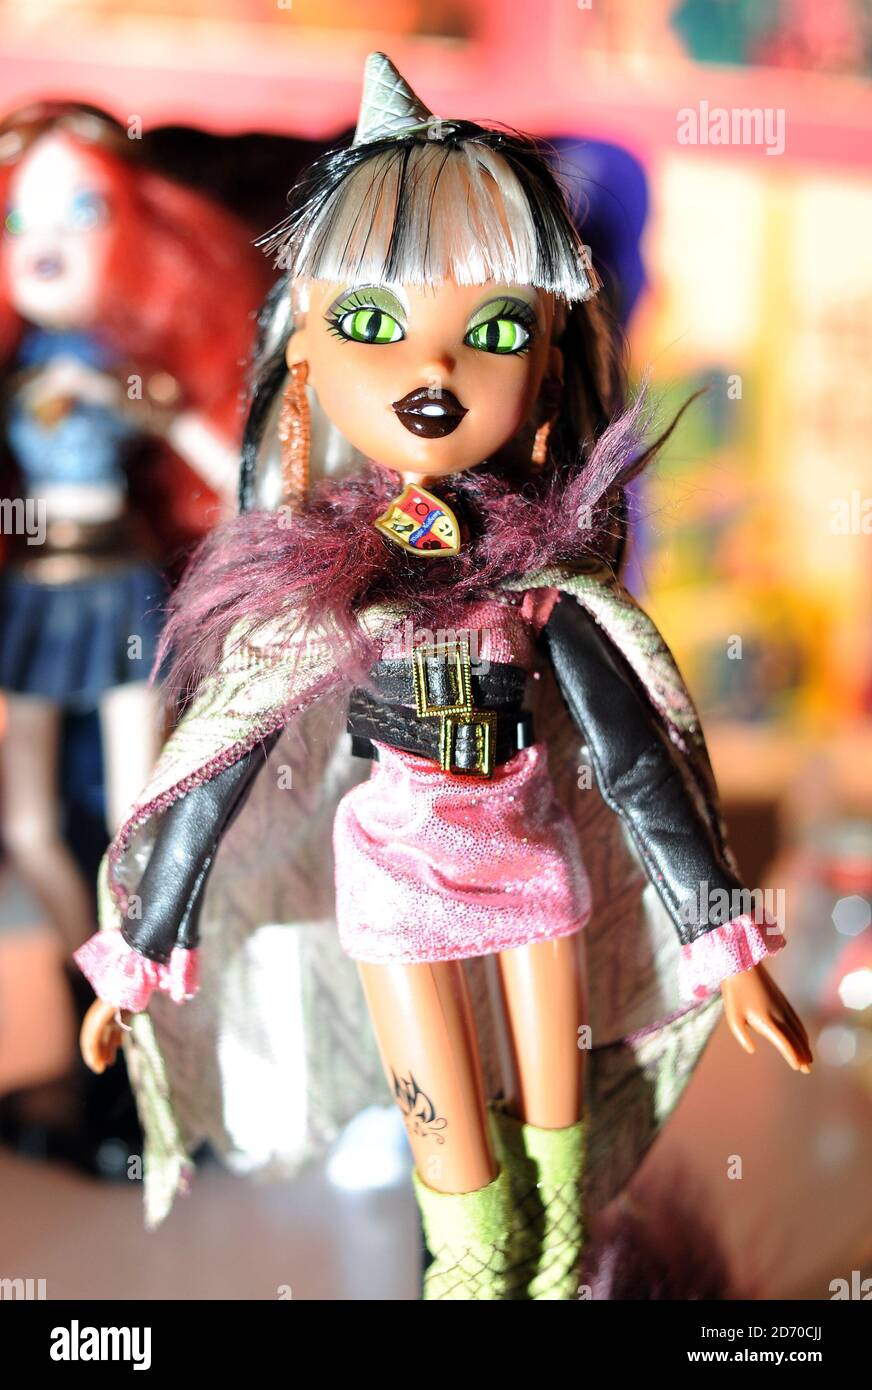 Les poupées Bratz Monster High sont exposées à Dream Toys, une exposition des meilleurs jouets de l'année à l'église St Mary's Church à Marylebone, Londres. Banque D'Images